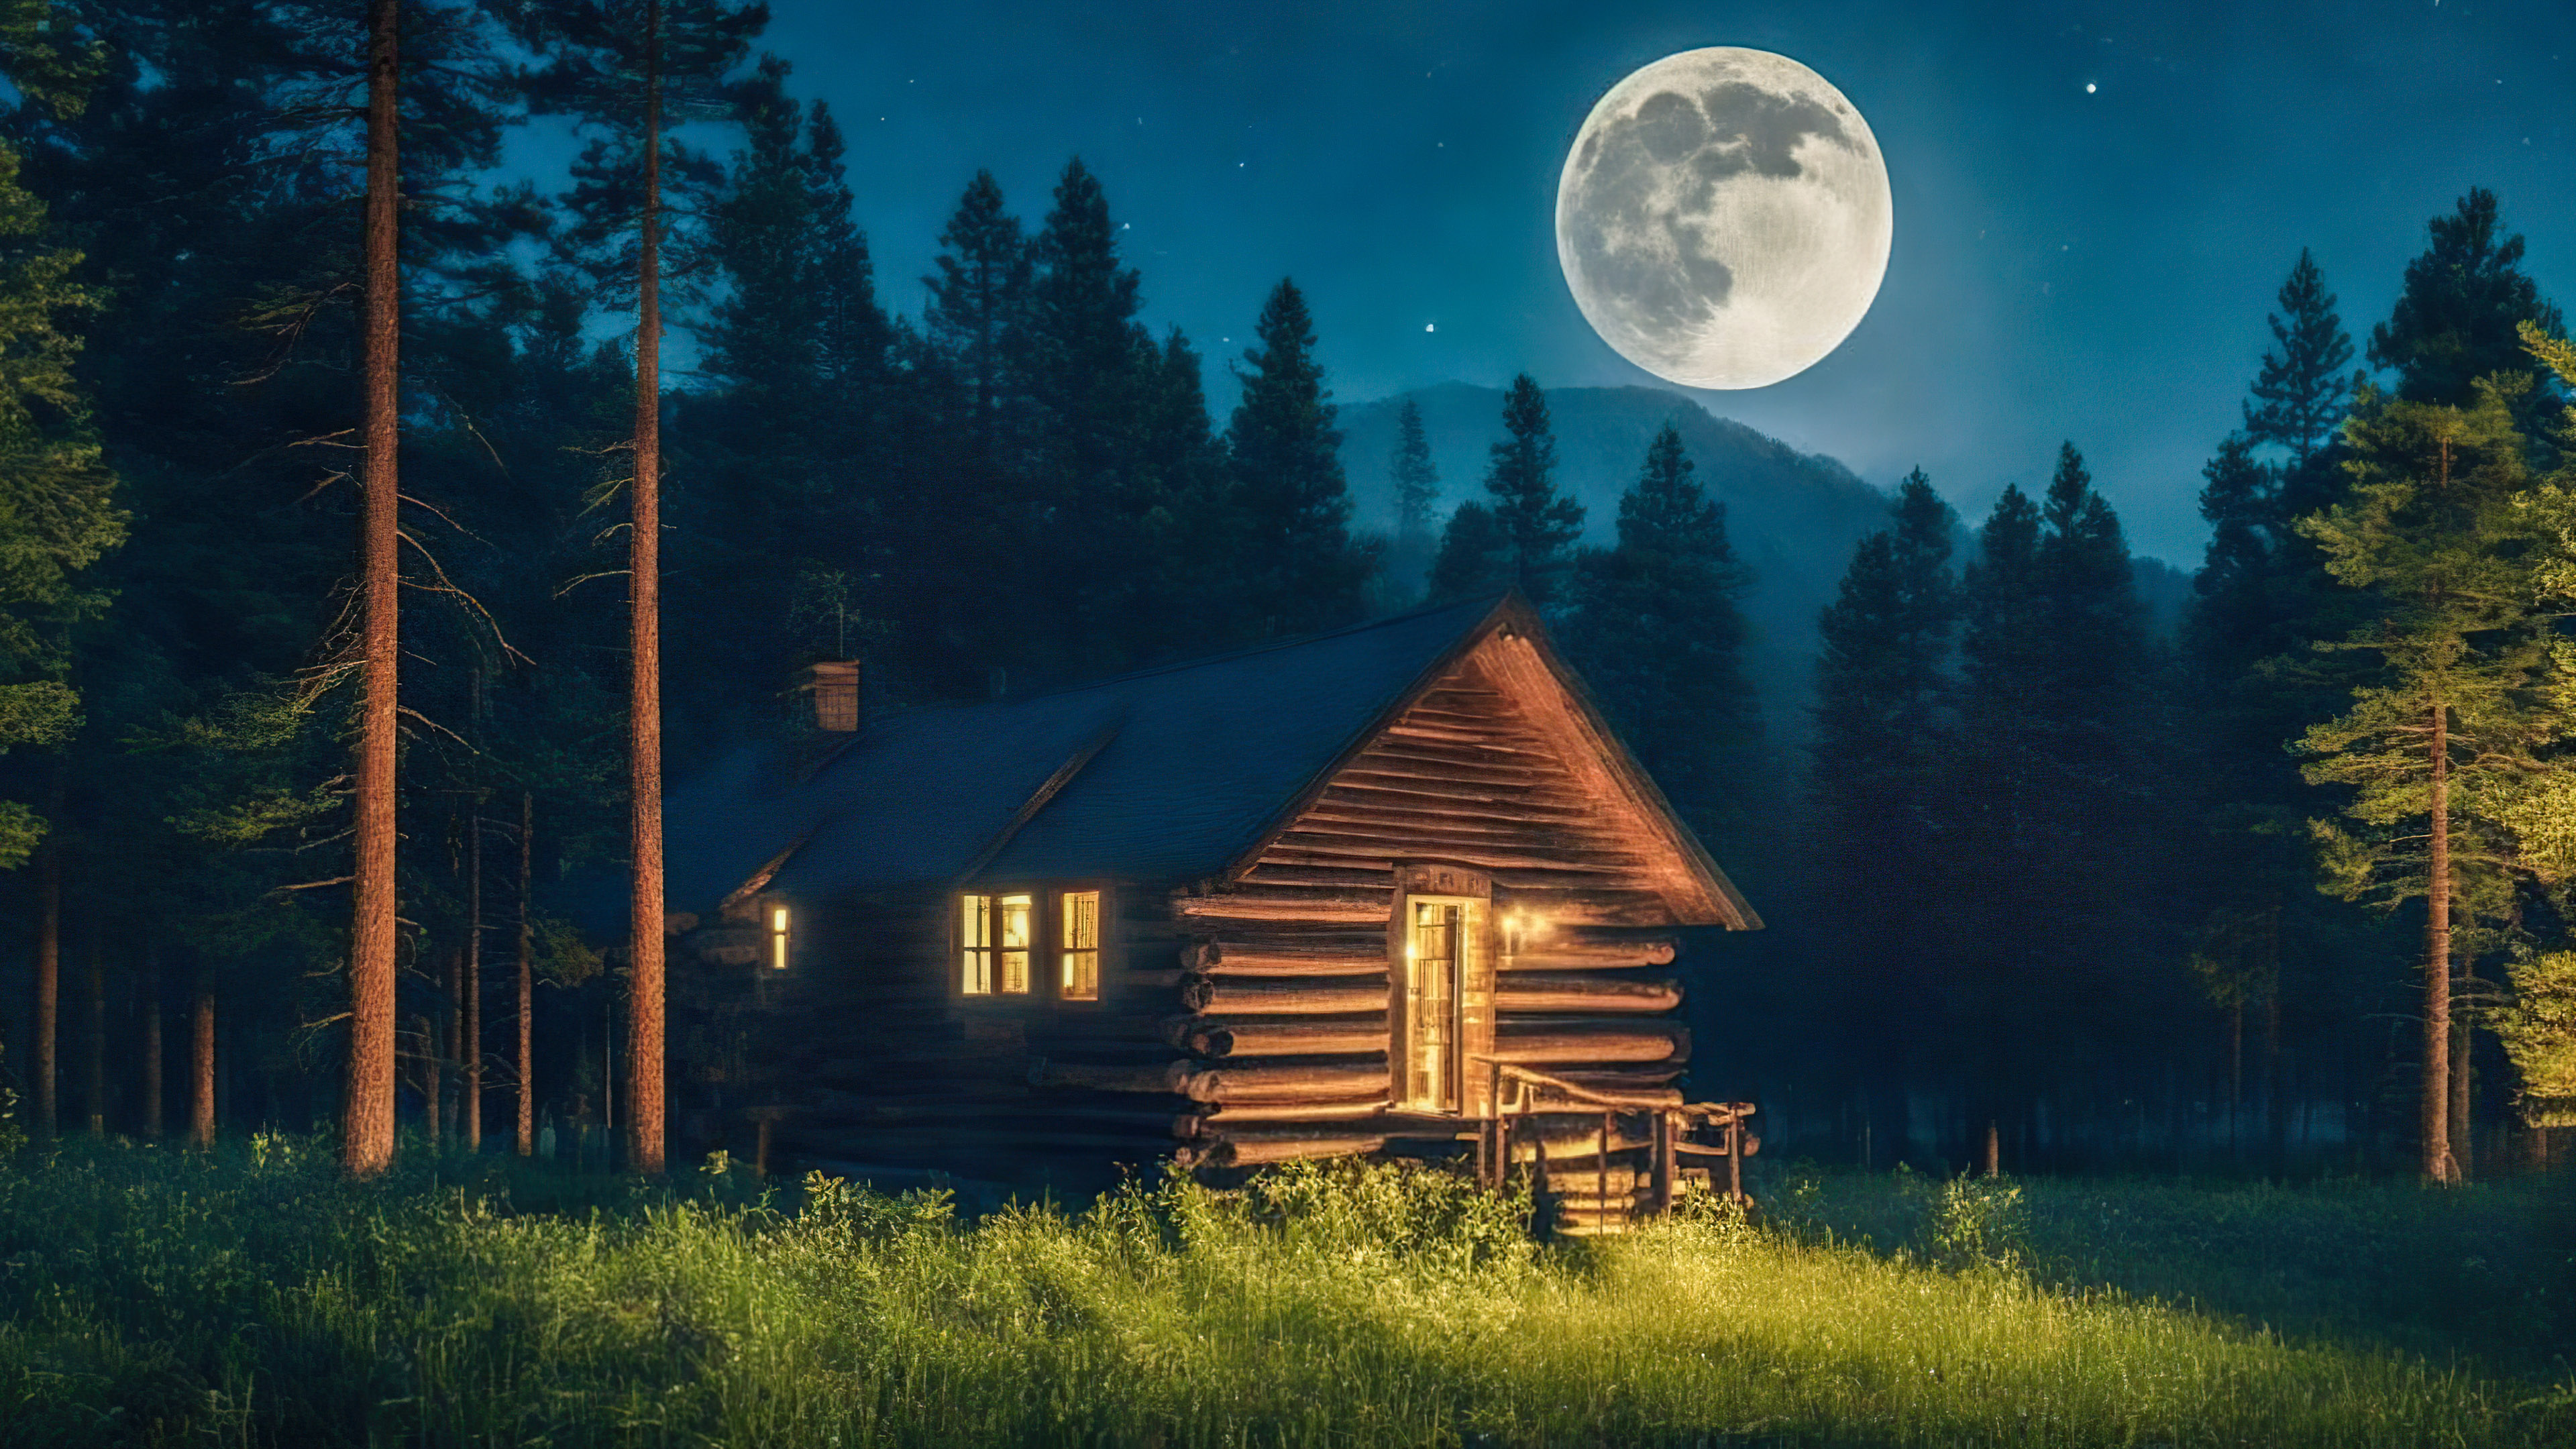 Découvrez la tranquillité de nos fonds d'écran de beaux paysages pour PC, présentant une cabane confortable nichée parmi les pins, baignée dans la douce lumière d'une pleine lune. 